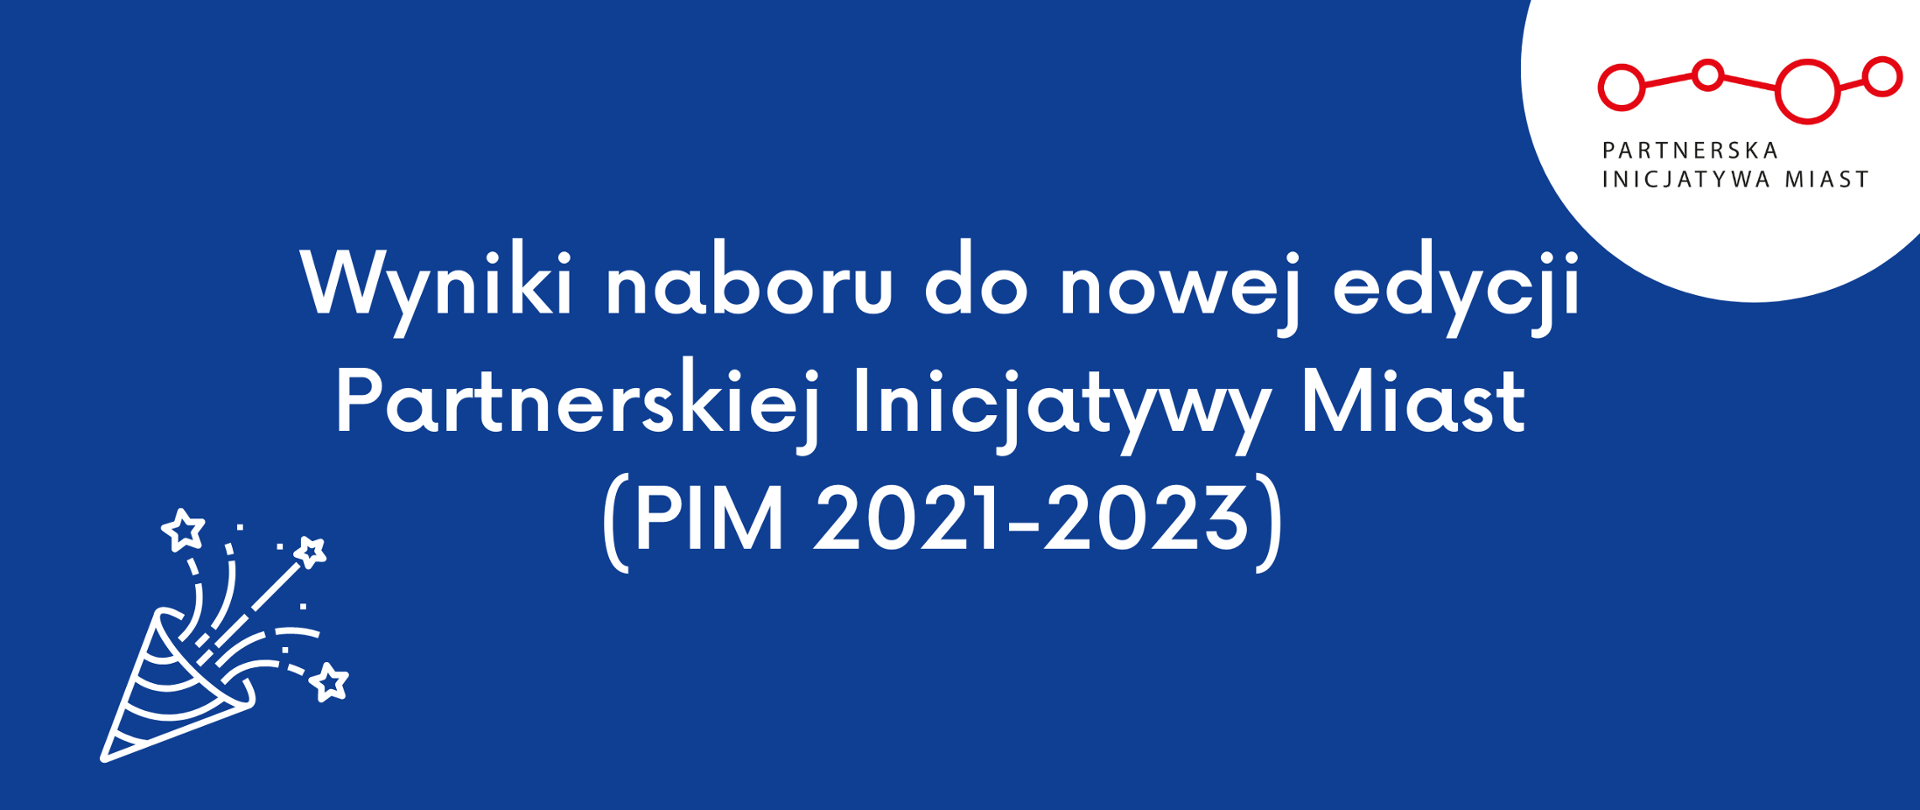 Wyniki naboru do nowej edycji Partnerskiej Inicjatywy Miast (PIM 2021-2023)